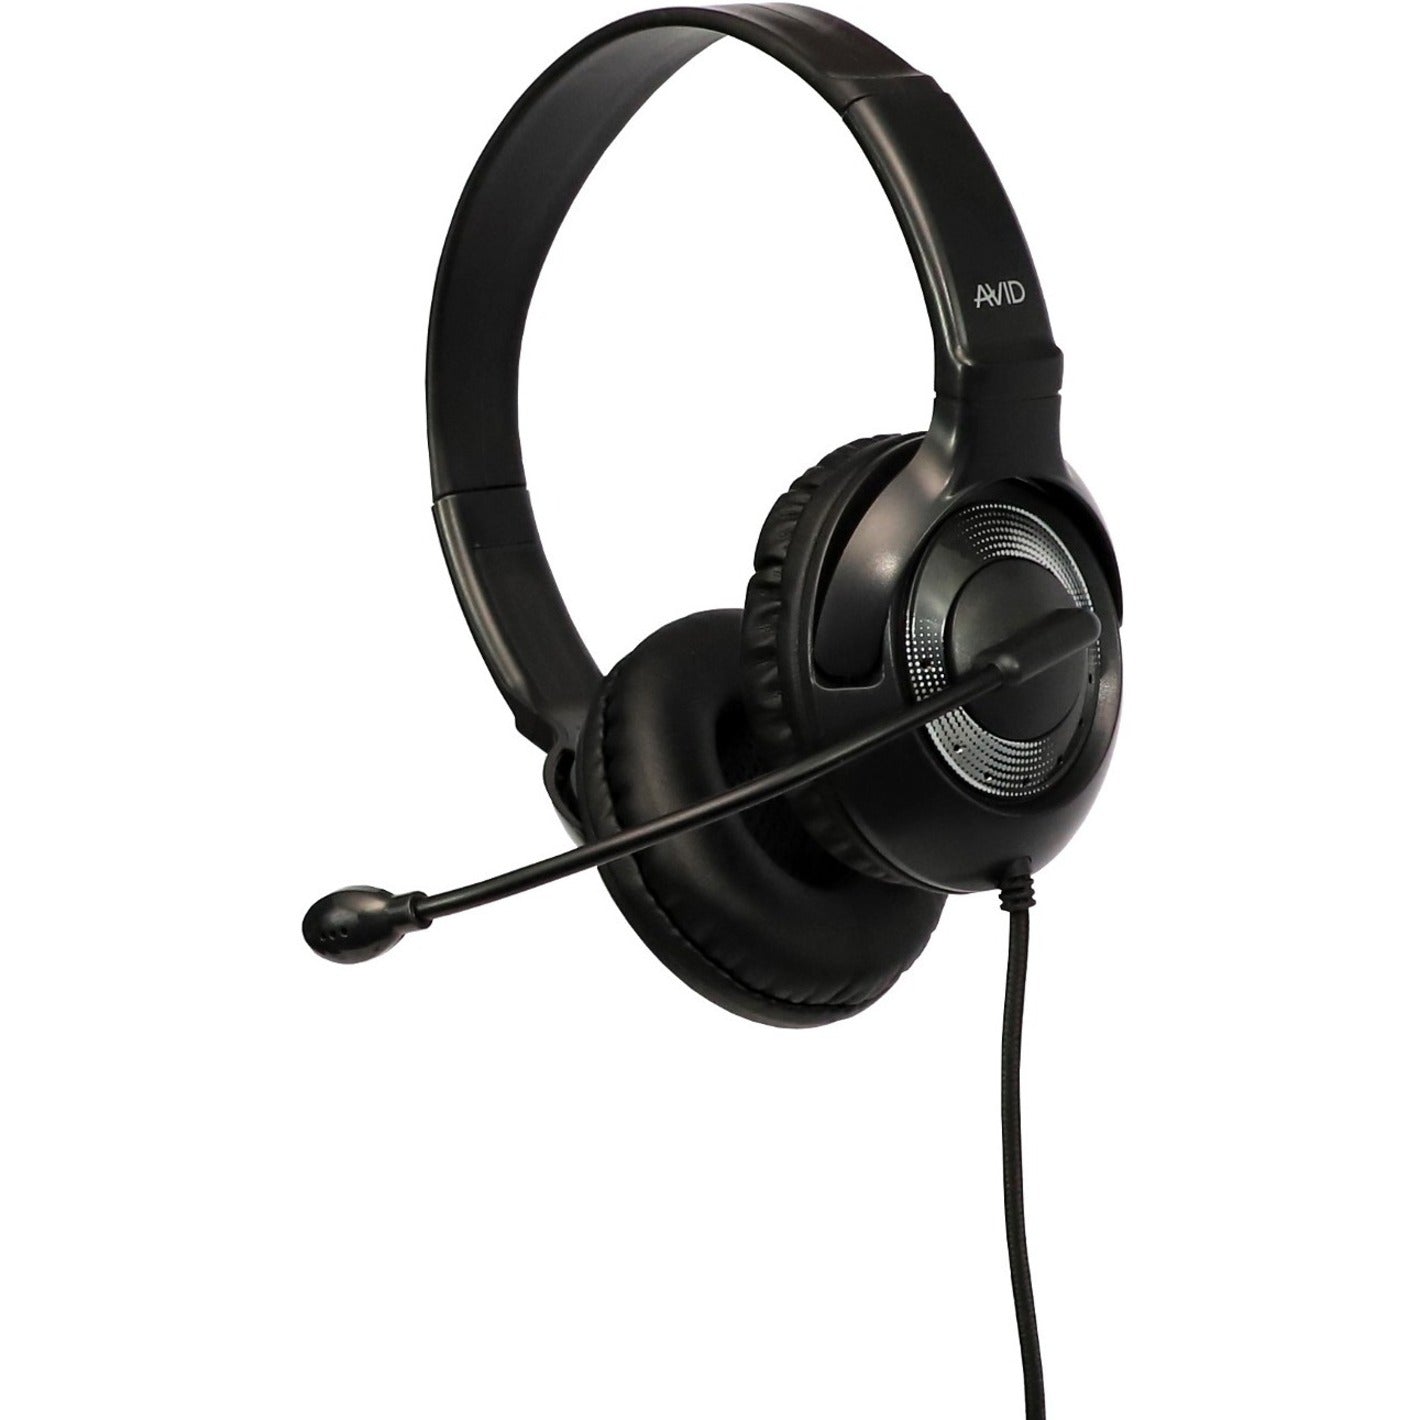 Auriculares con cable Avid 2AE55KL 2AE-55 con micrófono Negro Diadema ajustable Reducción de ruido Cómodos